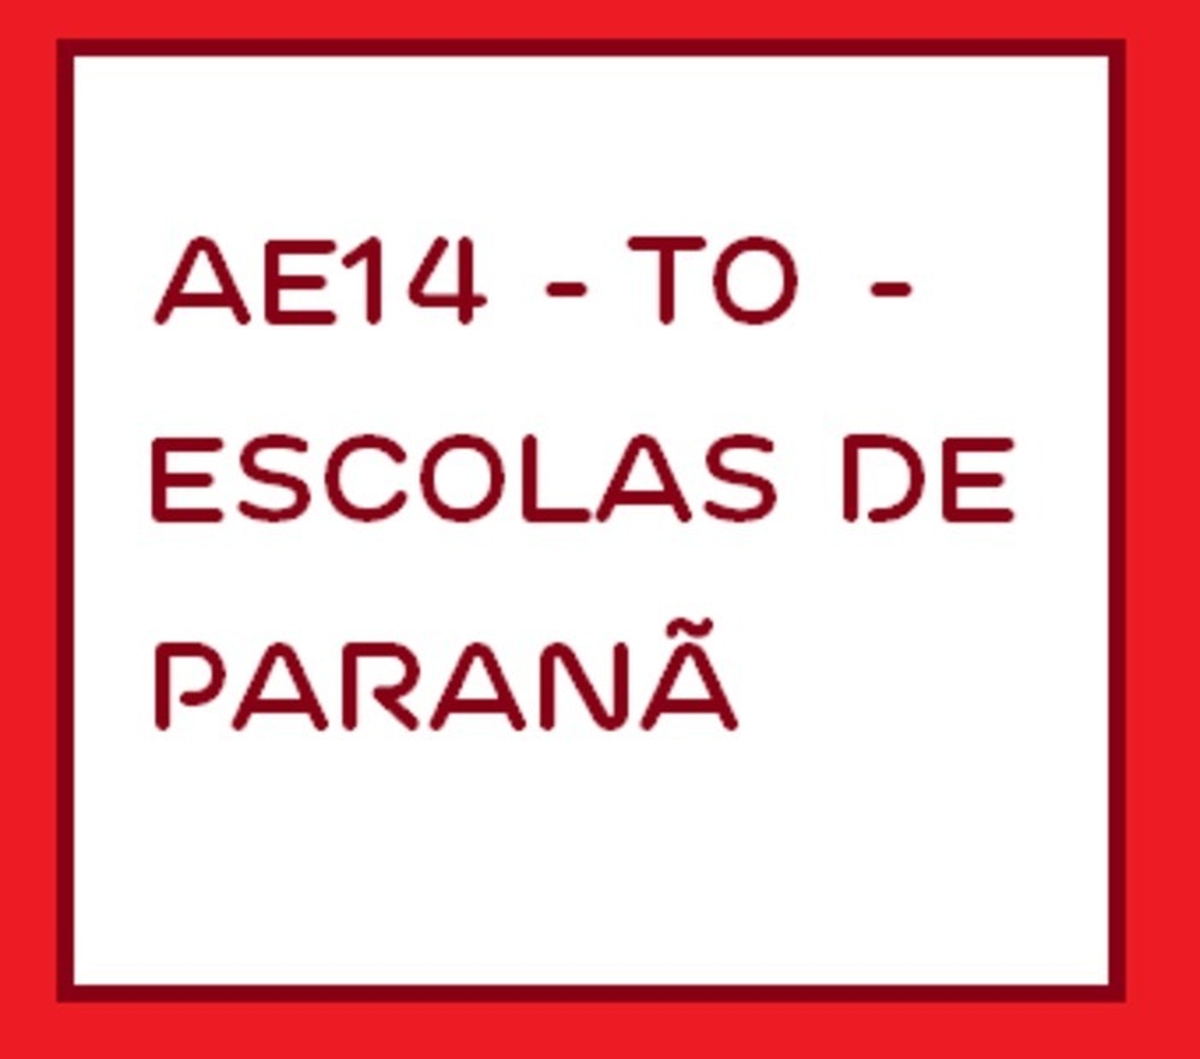 AE14 - TO - Escolas de Paranã